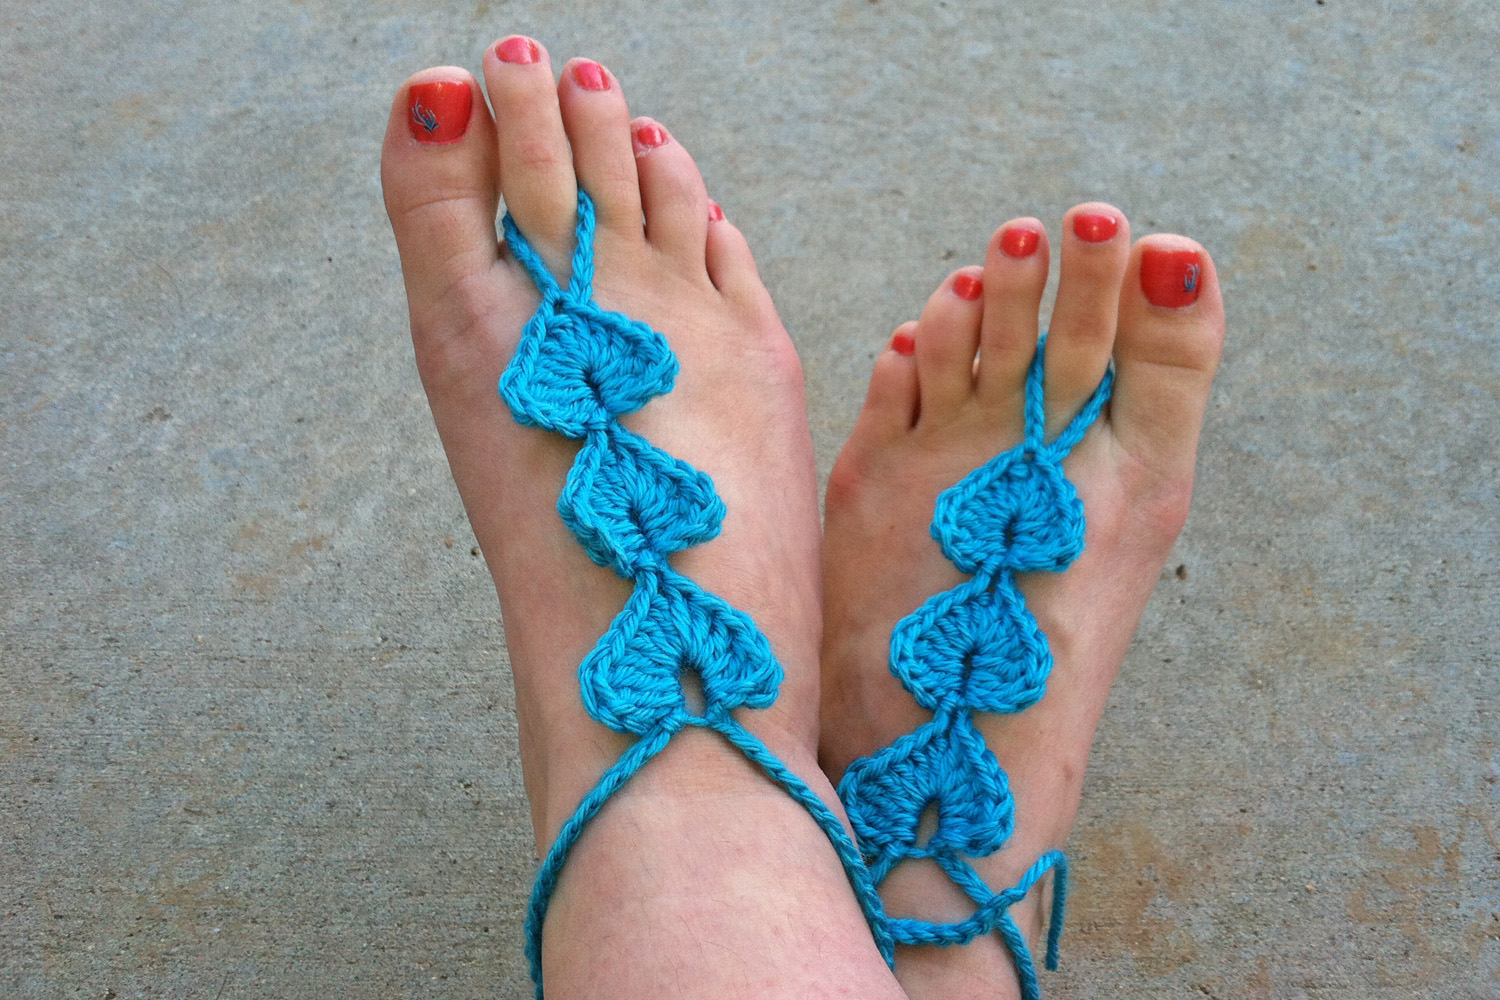 Enjoy your pretty summer feet!